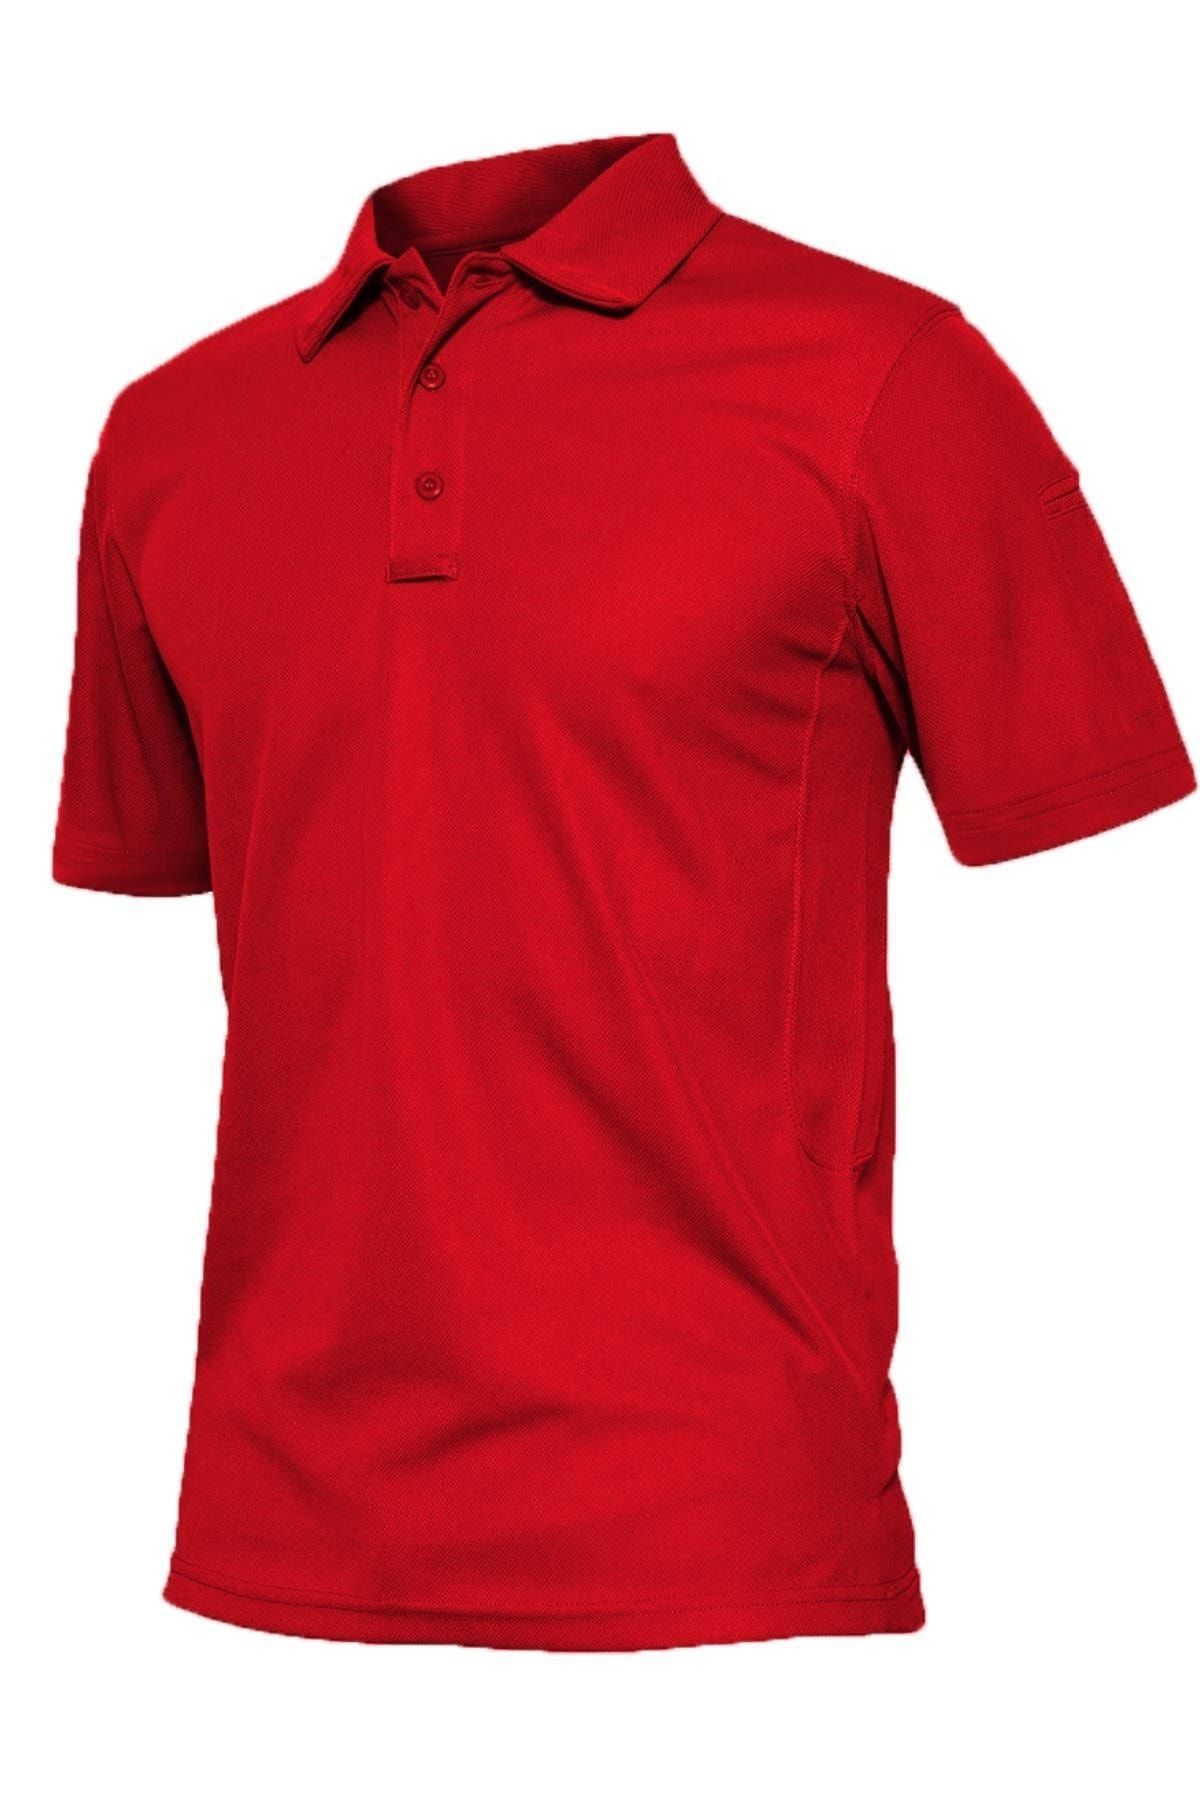 Ghassy Co Erkek Taktik Gömlek Hızlı Kuruma Nem Emici Performans Pique Jersey Golf T-shirt